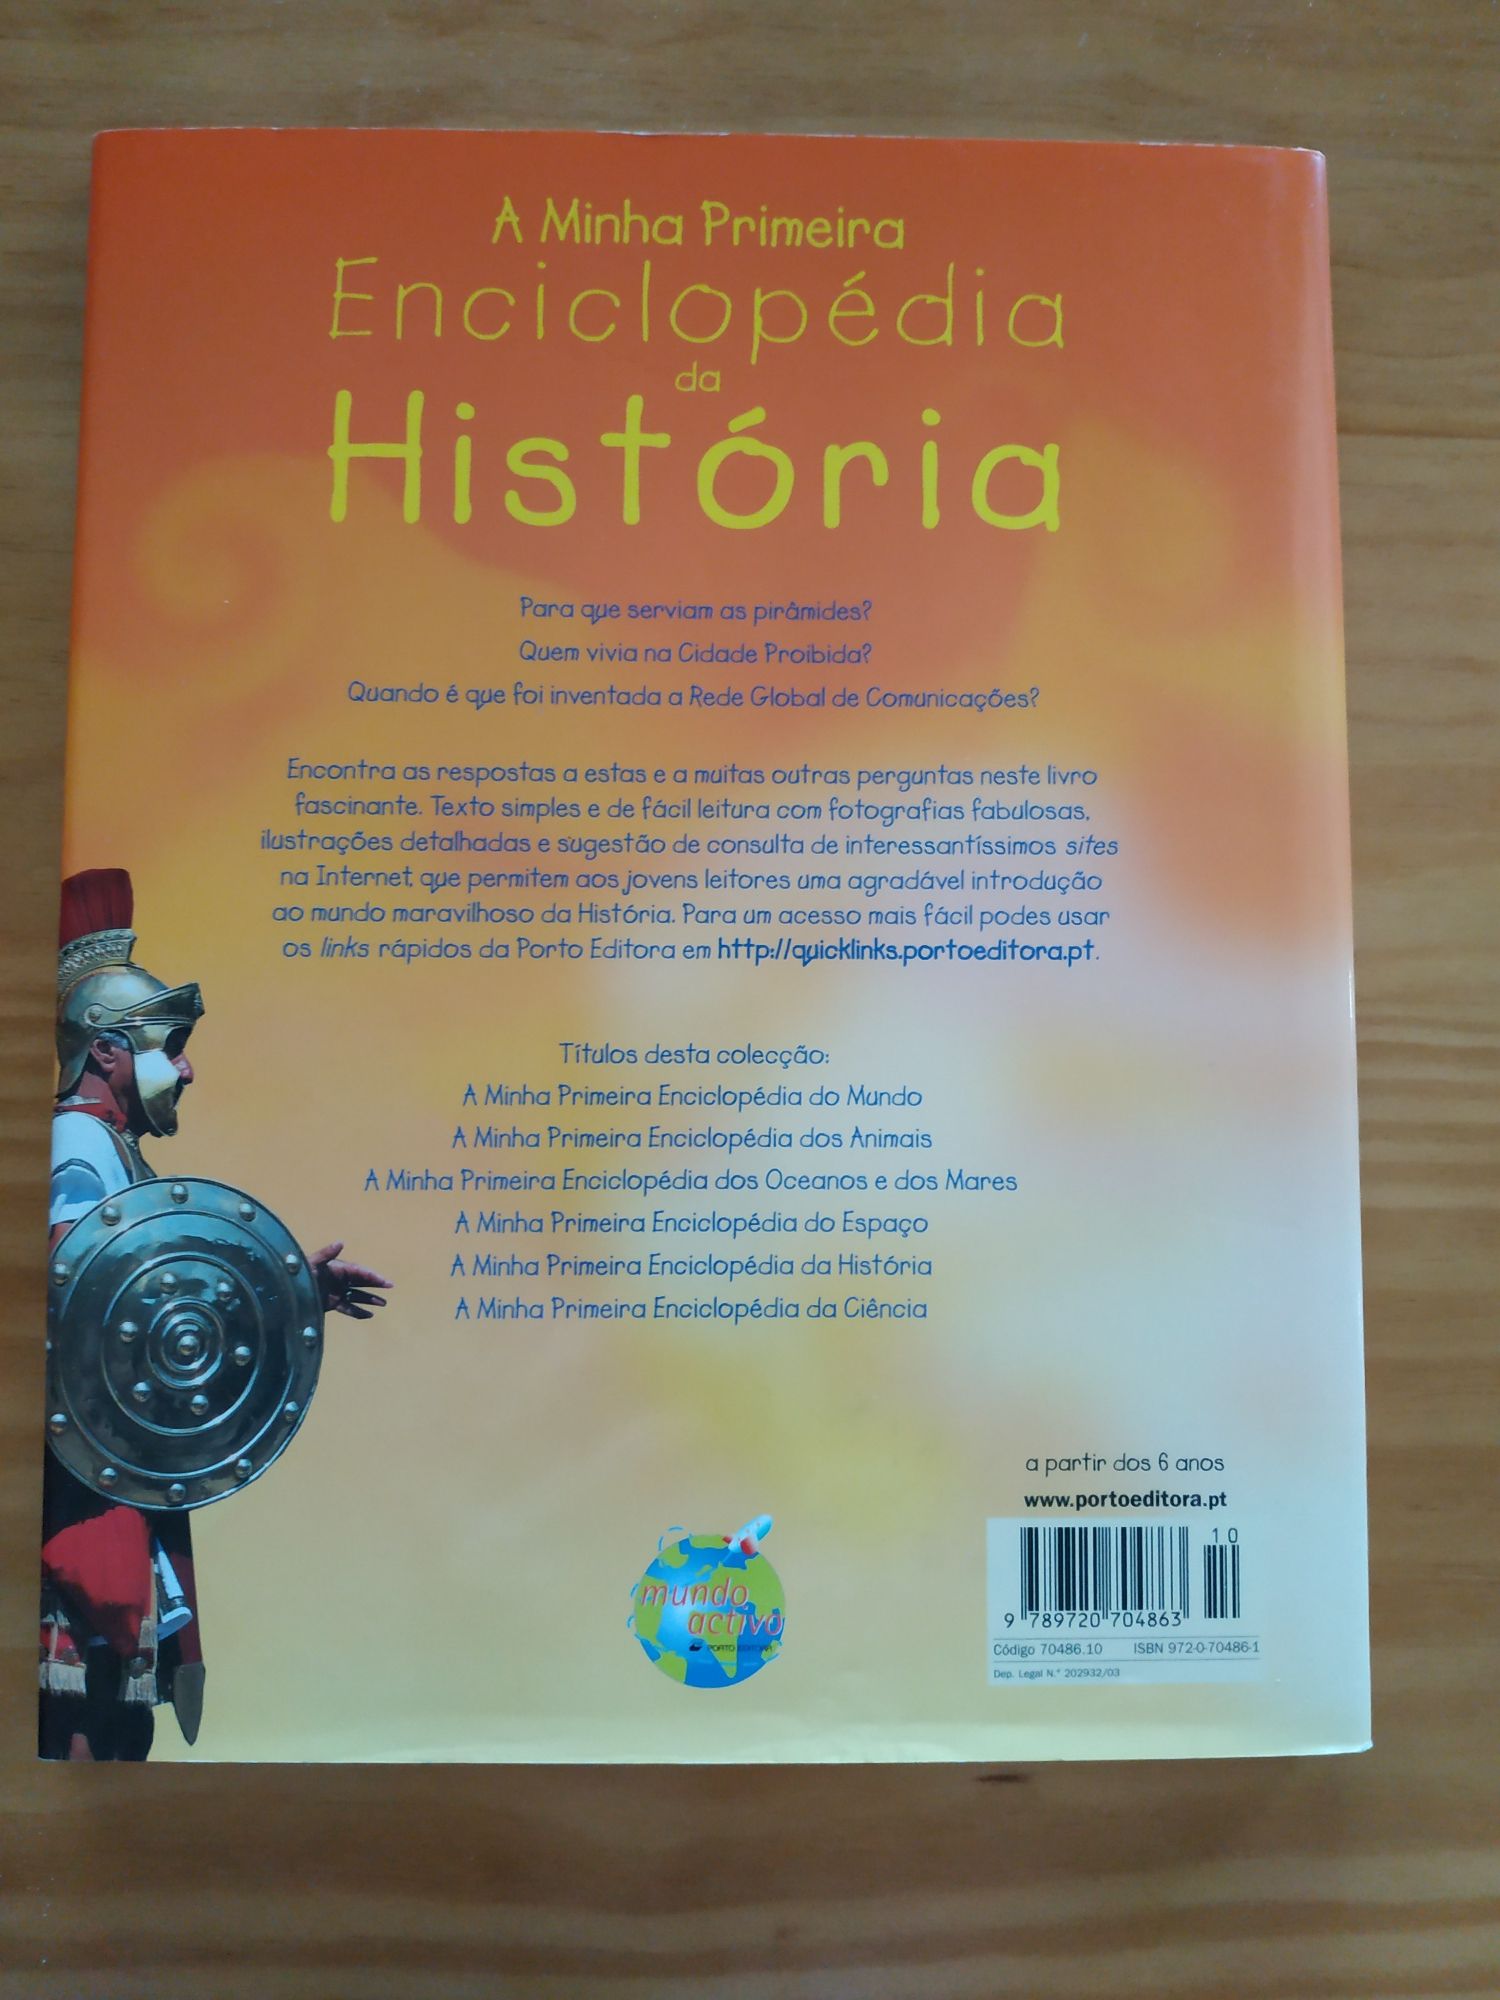 "A minha primeira enciclopédia de História" da Porto editora